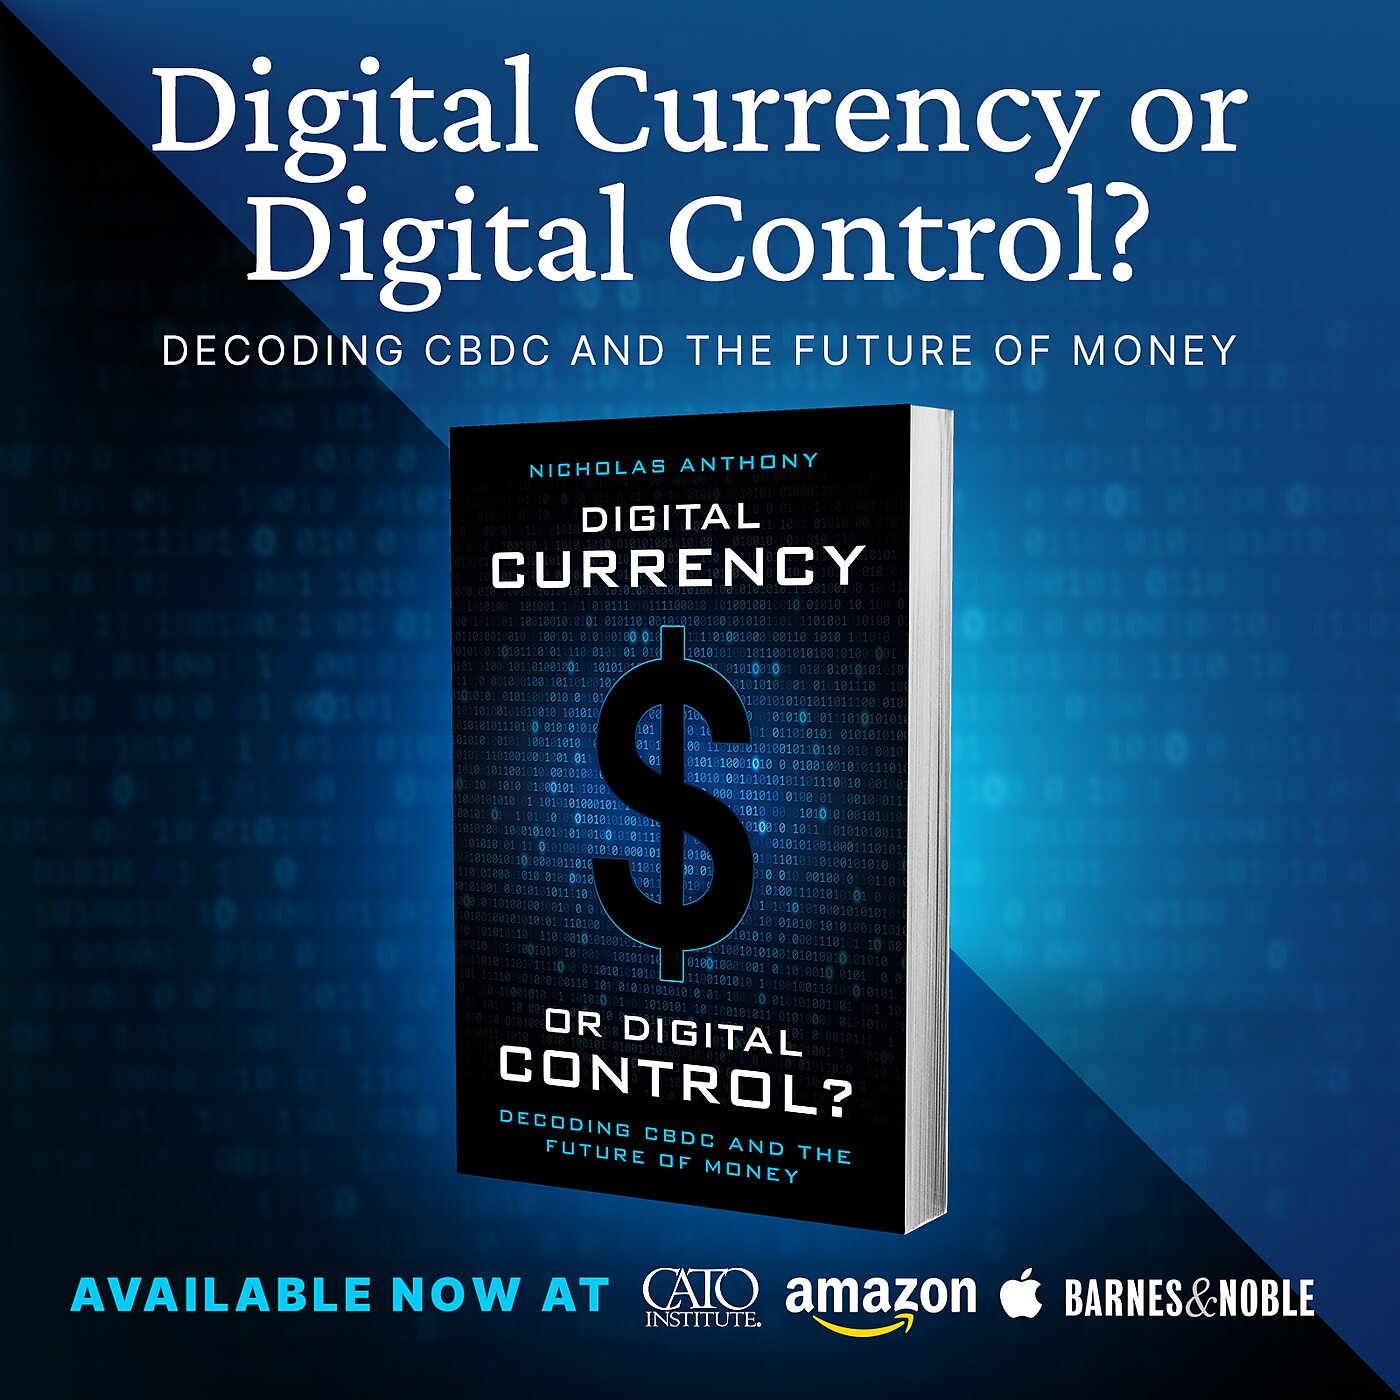 Digital Currency or Digital Control?